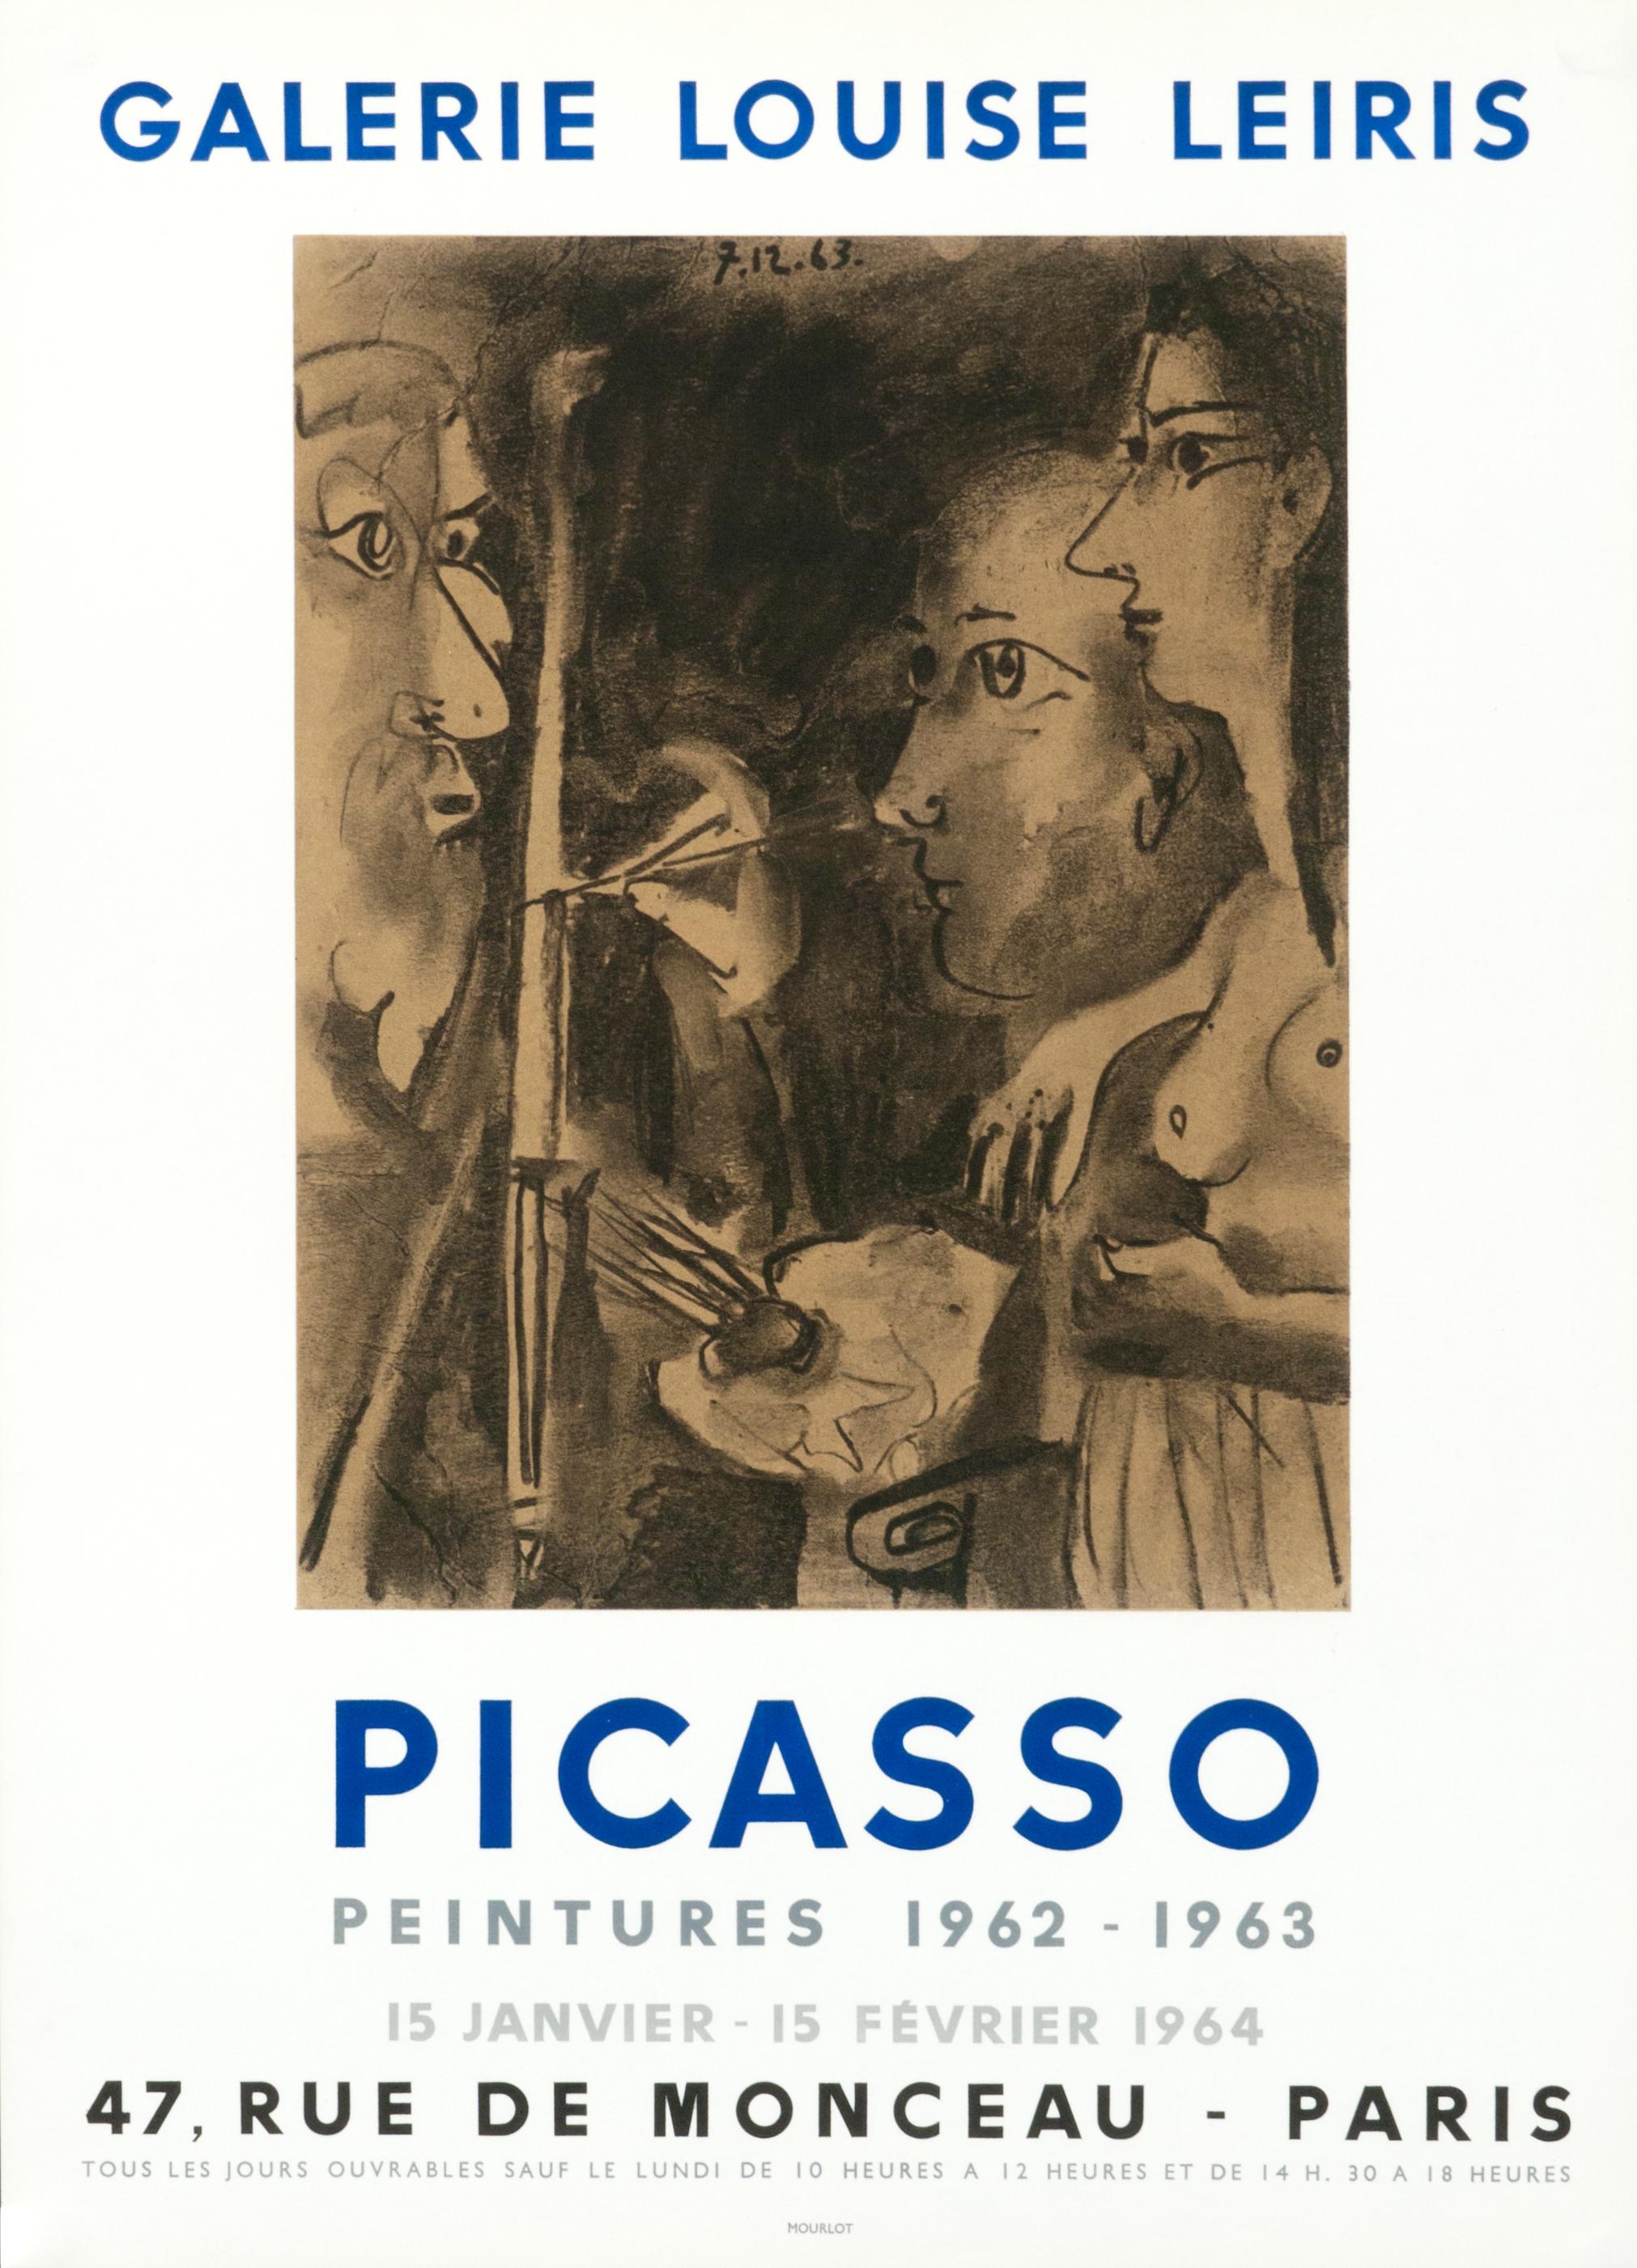 (after) Pablo Picasso Figurative Print - "Picasso - Peintures 1962" Vintage French Exhibition Poster Paris